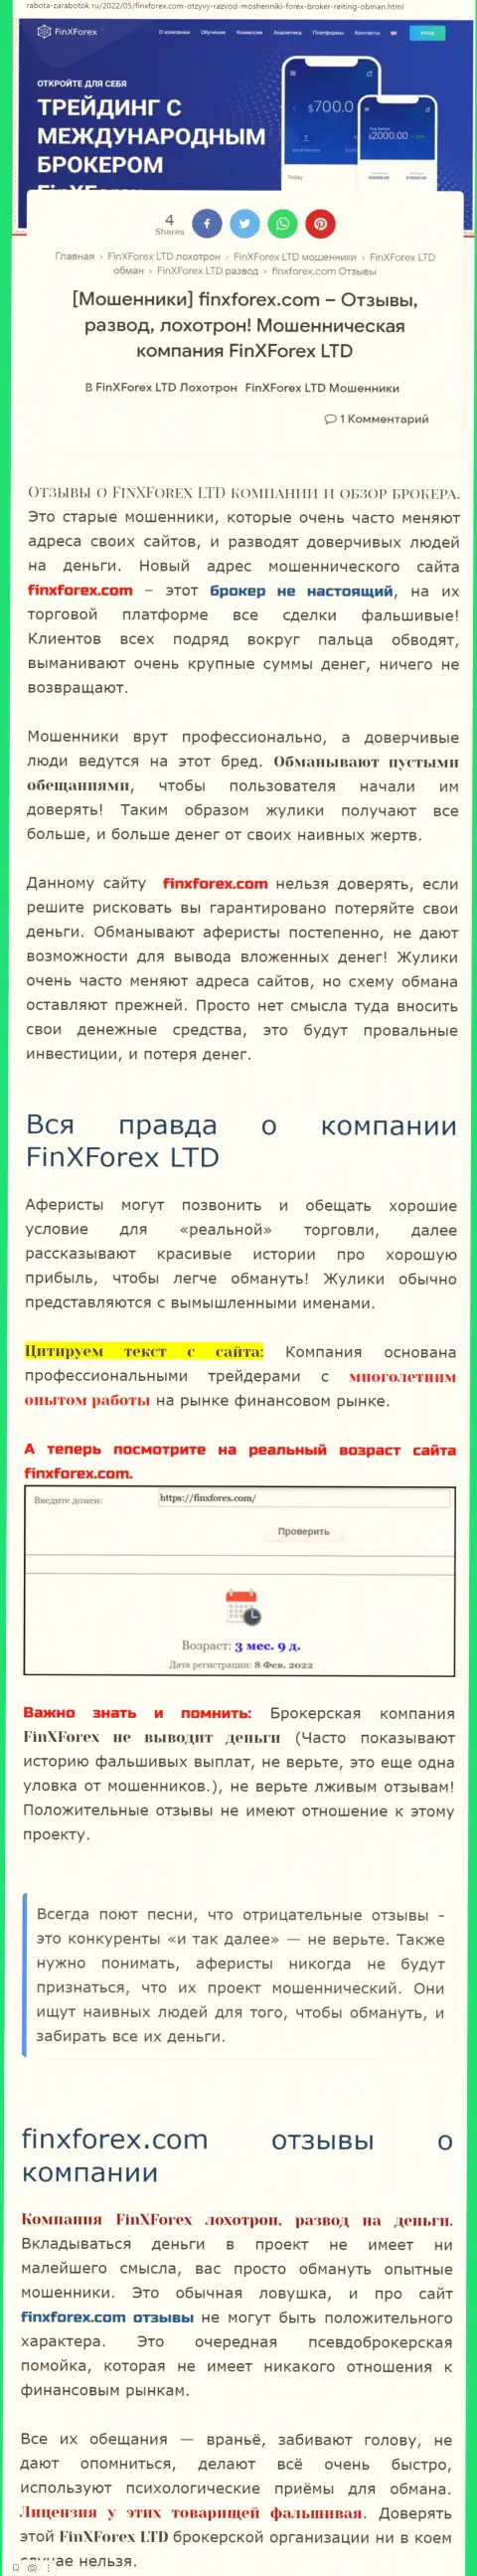 Автор обзора о FinXForex LTD утверждает, что в Фин Х Форекс лохотронят